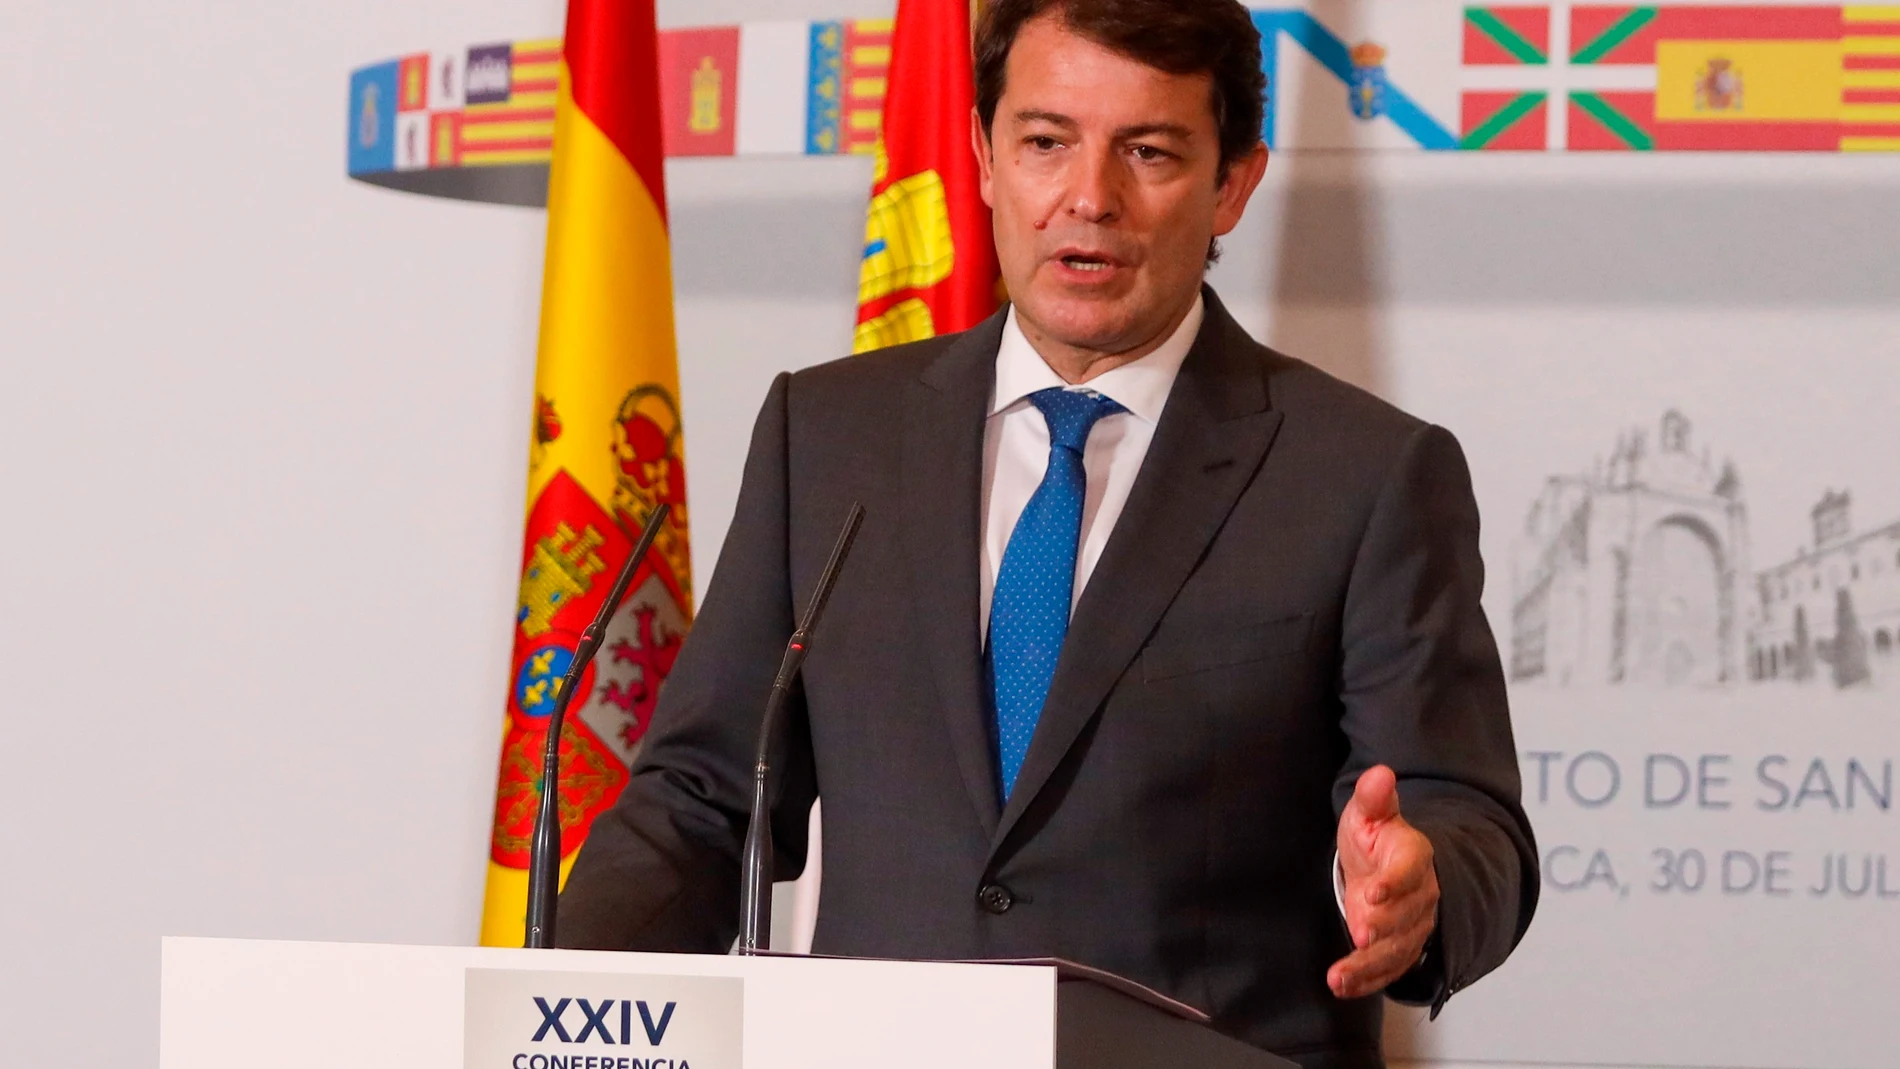 El presidente de la Junta de Castilla y León, Alfonso Fernández Mañueco, comparece al término de la reunión de trabajo de la XXIV Conferencia de Presidentes, celebrada en Salamanca